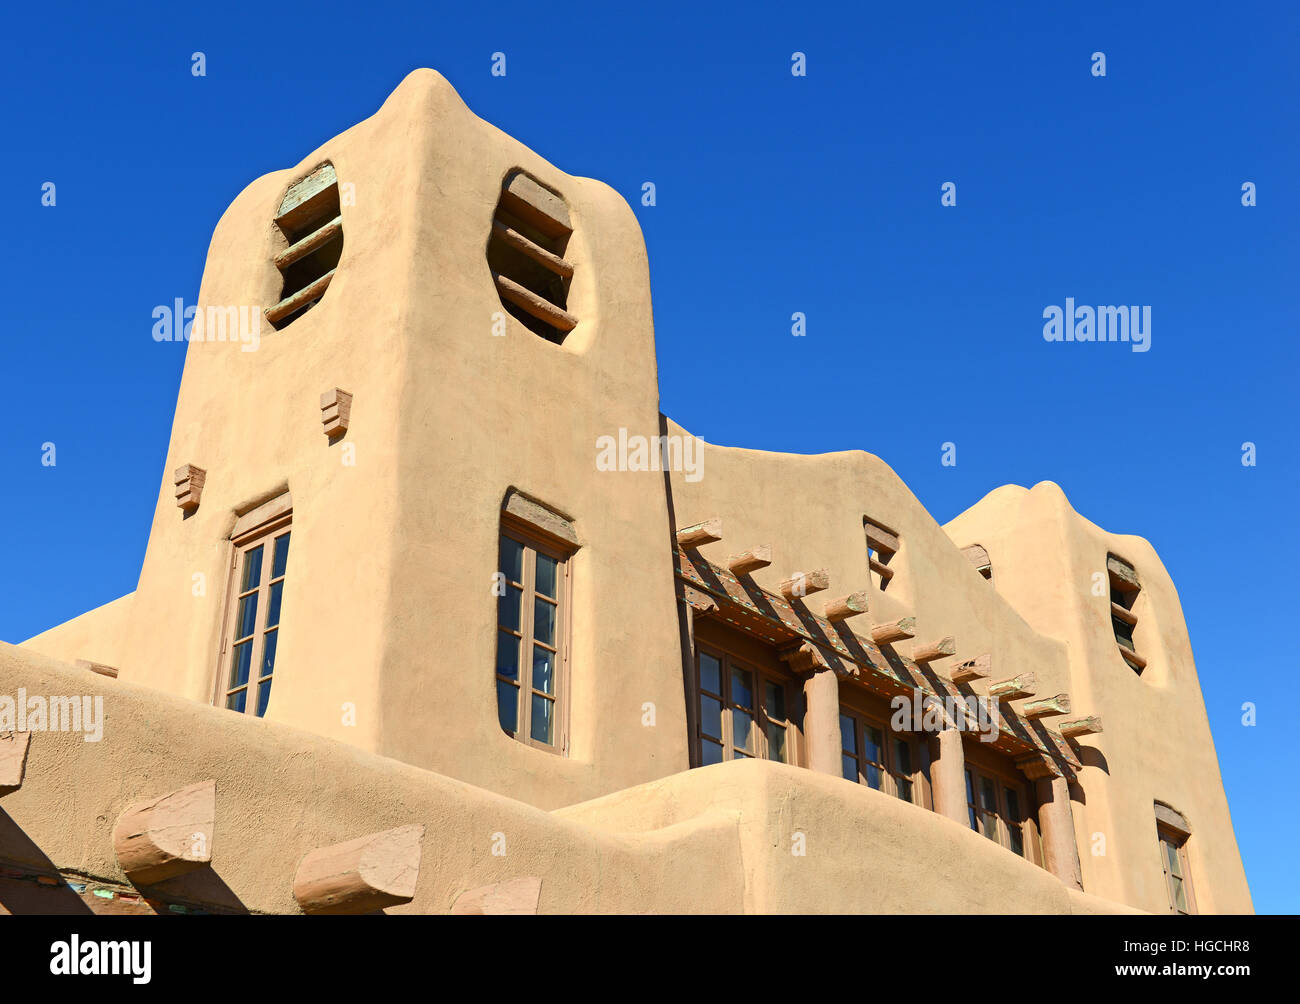 L'architecture traditionnelle de style adobe Pueblo habituellement dans des tons de terre, appelé style Old Santa Fe, Nouveau Mexique Banque D'Images